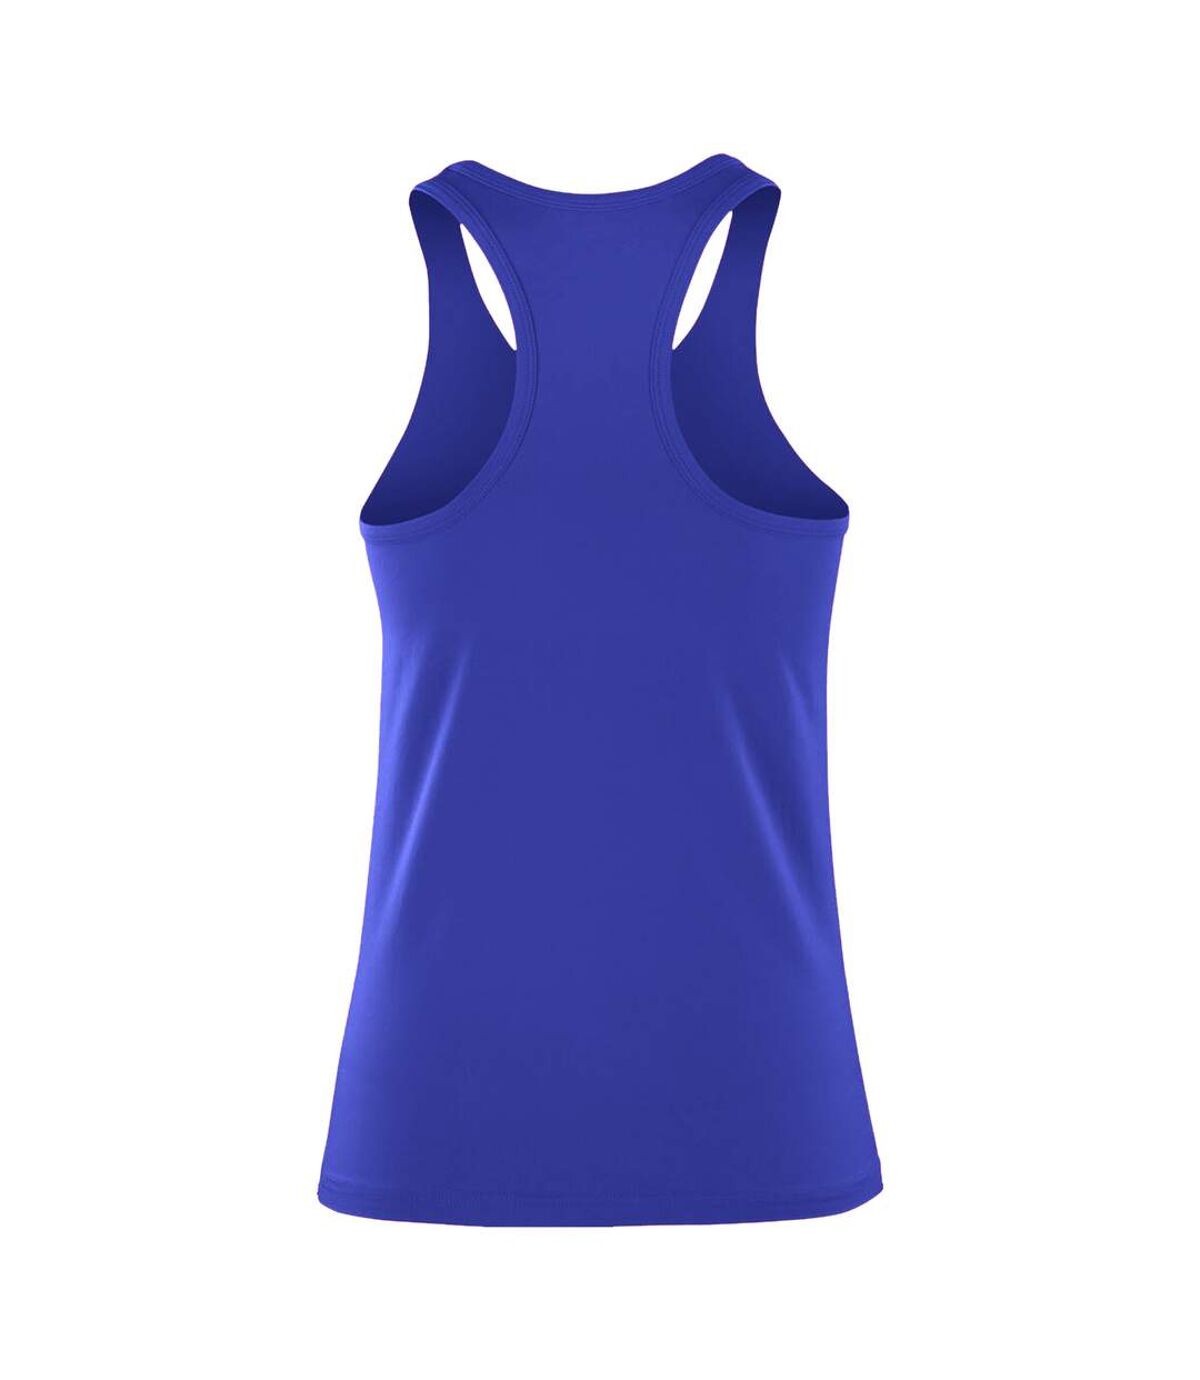 Spiro - Haut Fitness - Femmes (Bleu) - UTRW5170